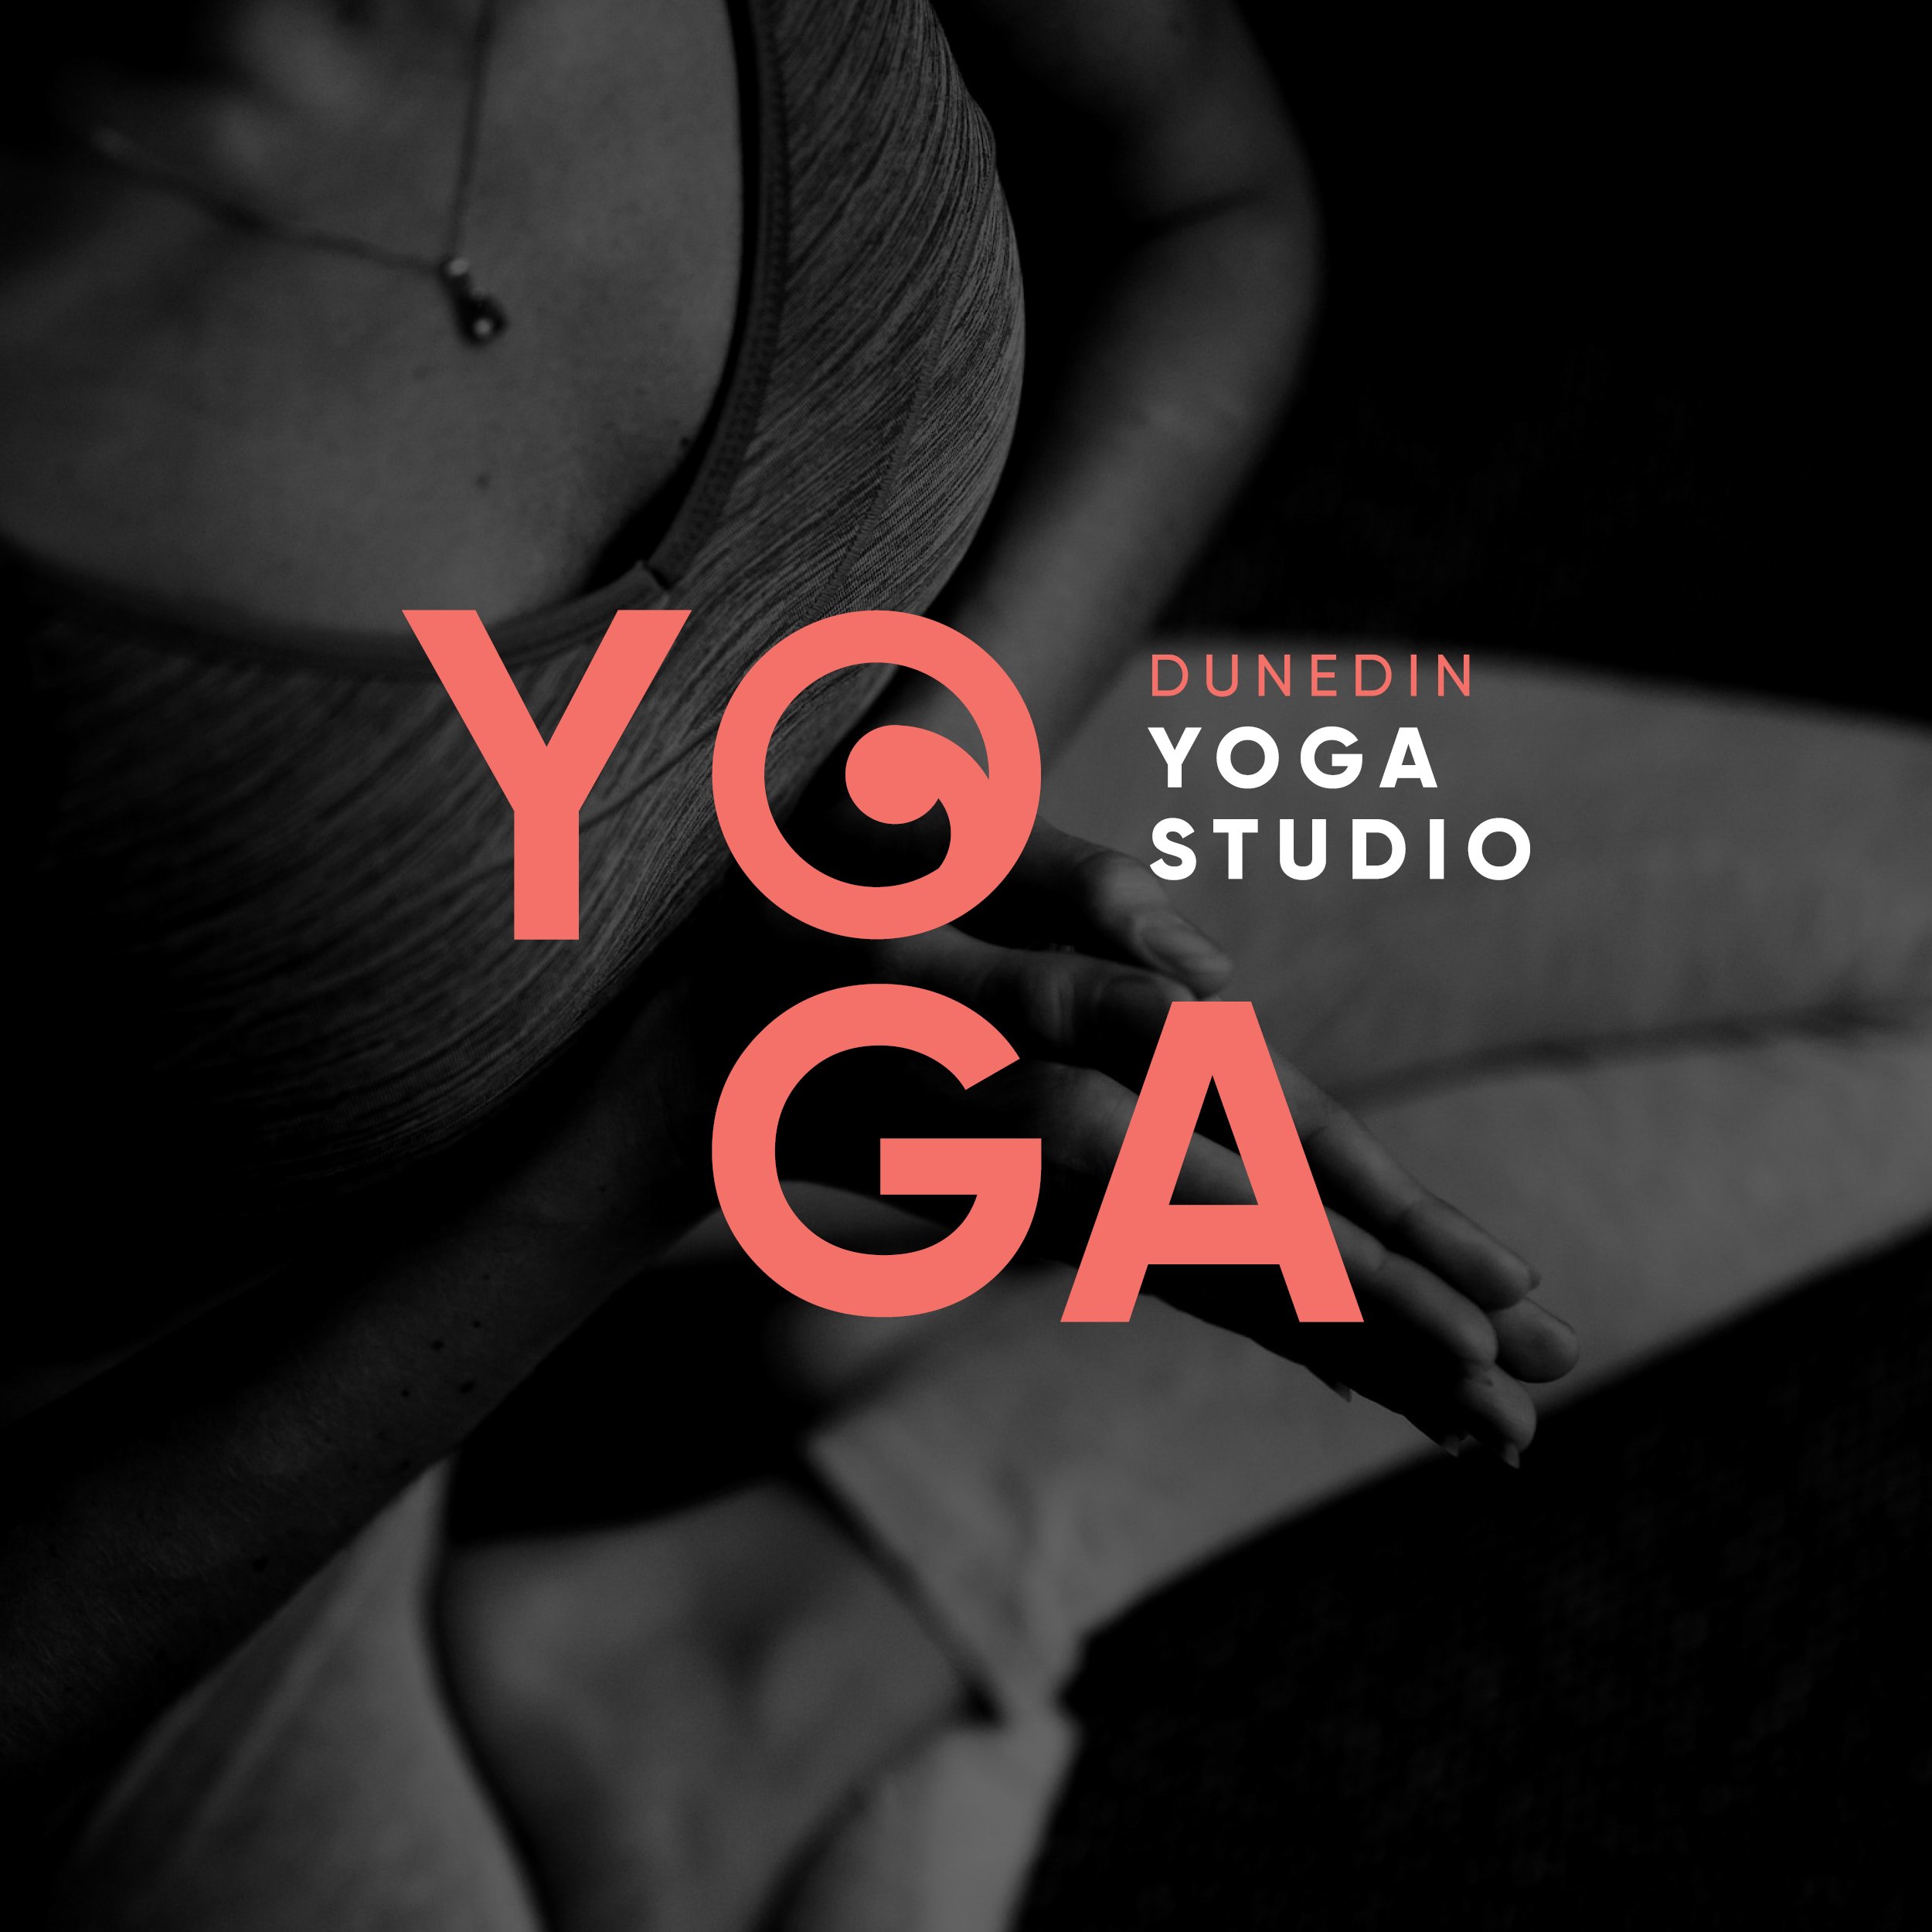 Dunedin Yoga Studio